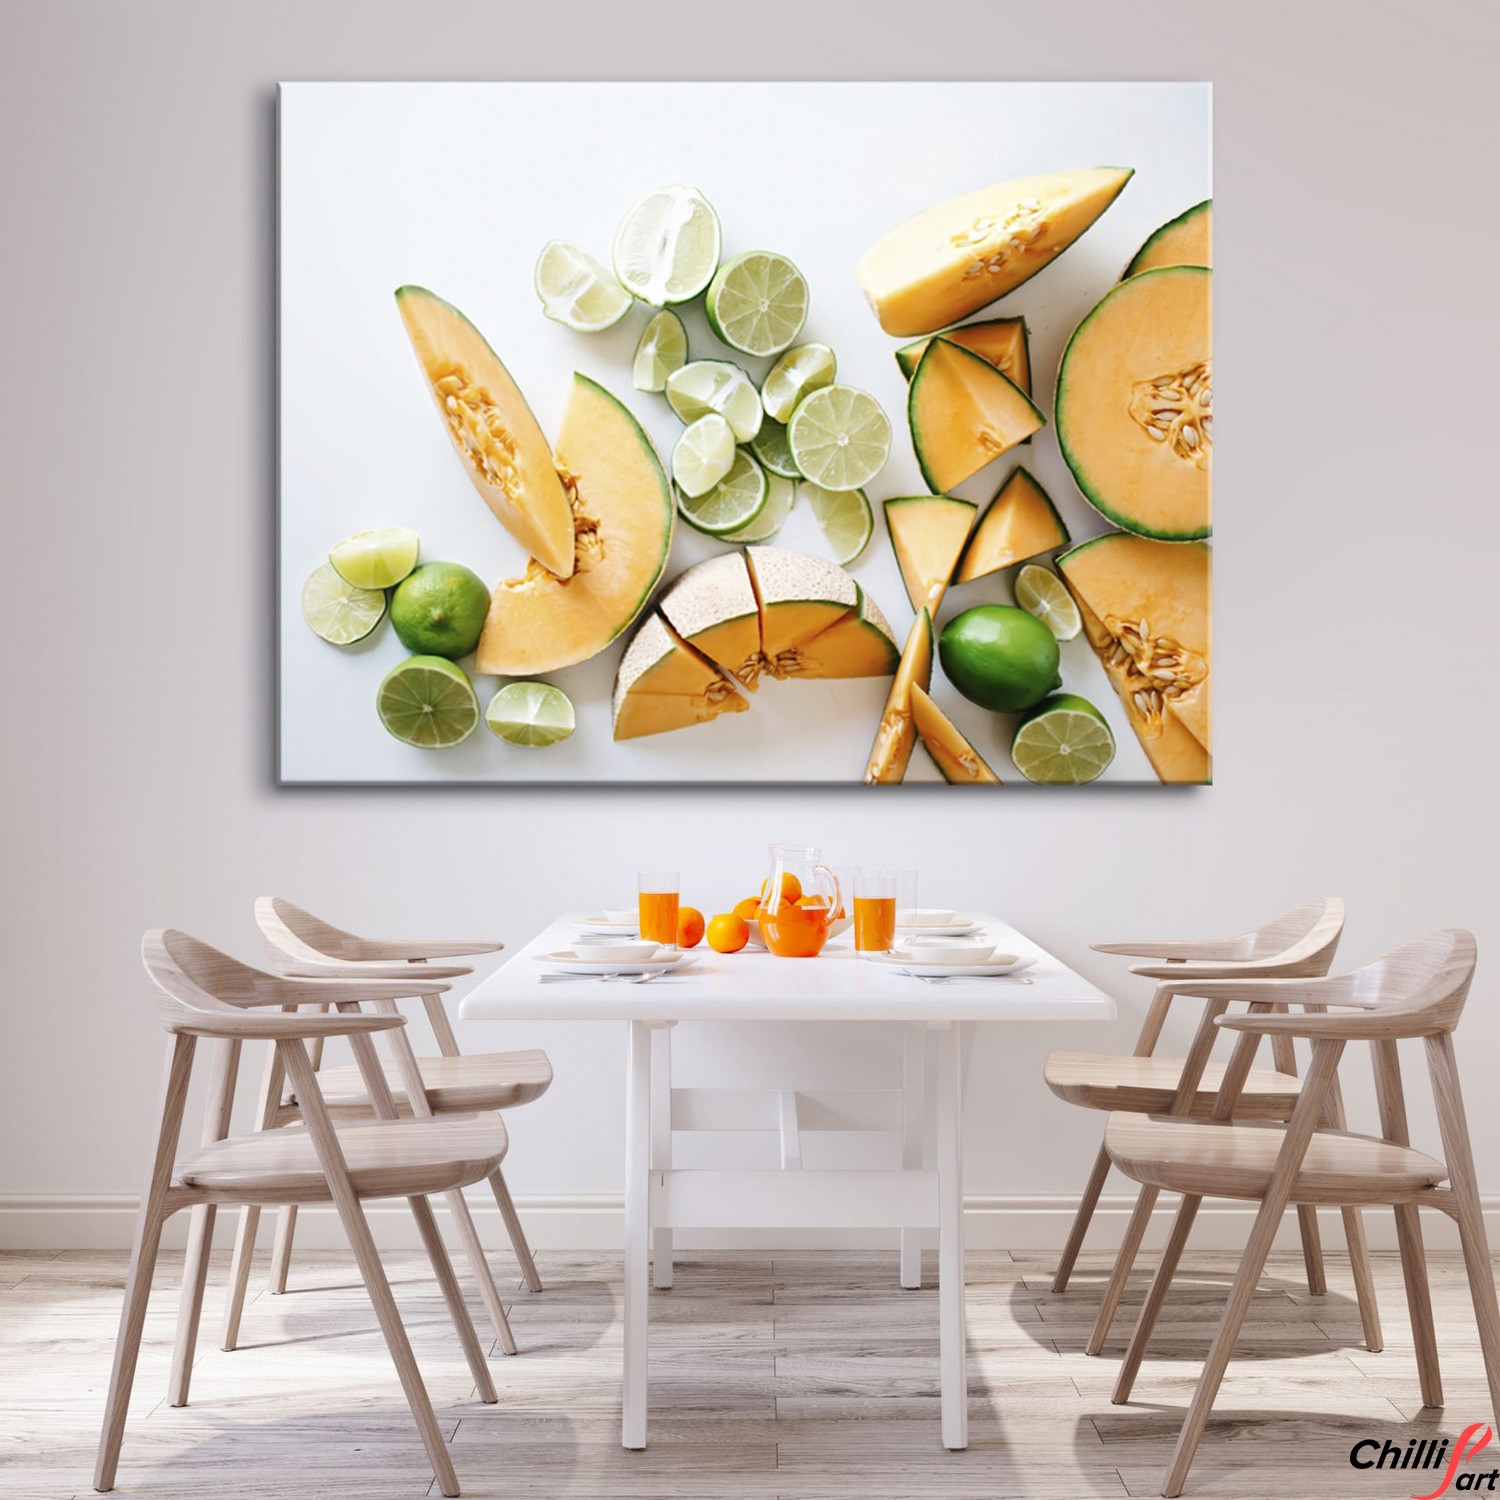 Картина для кухни Melon